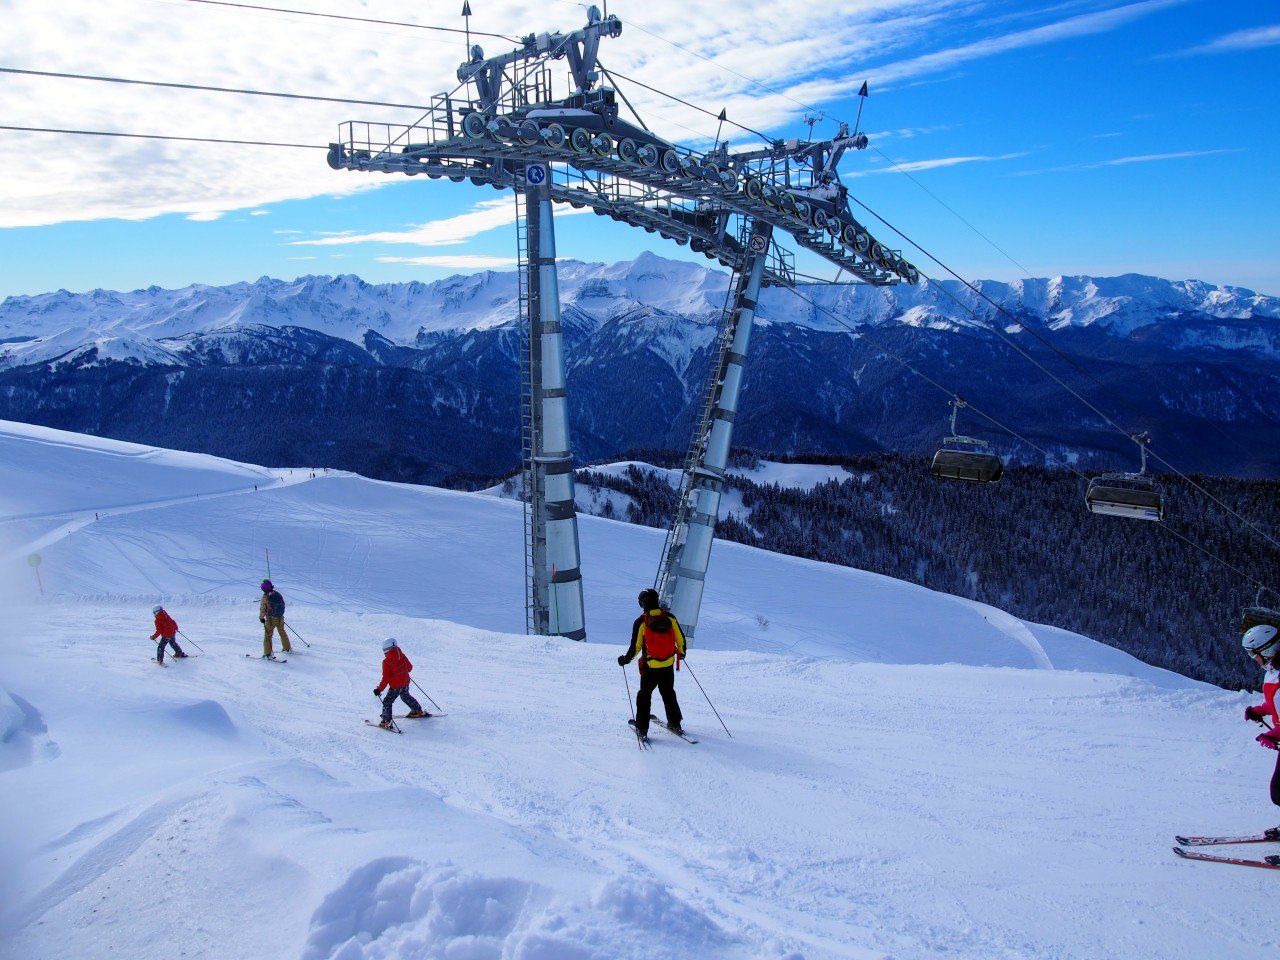 Ски-пасс с открытой датой катания внедрят в новом горнолыжном сезоне в Сочи